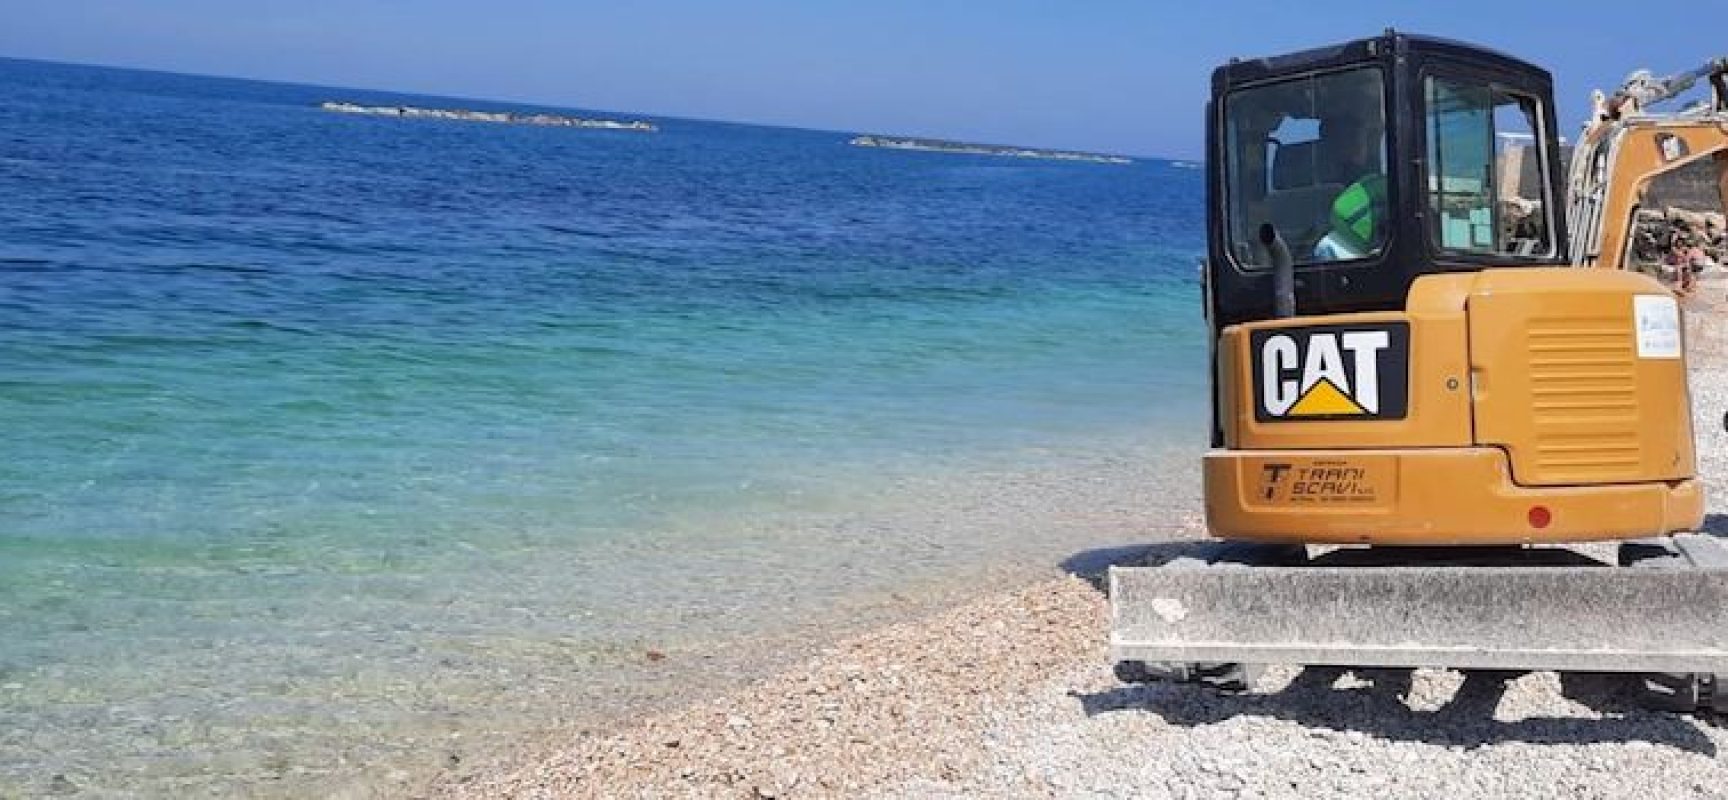 Spiagge, Angarano: “Iniziati lavori livellamento ciottoli e pulizia spiagge”